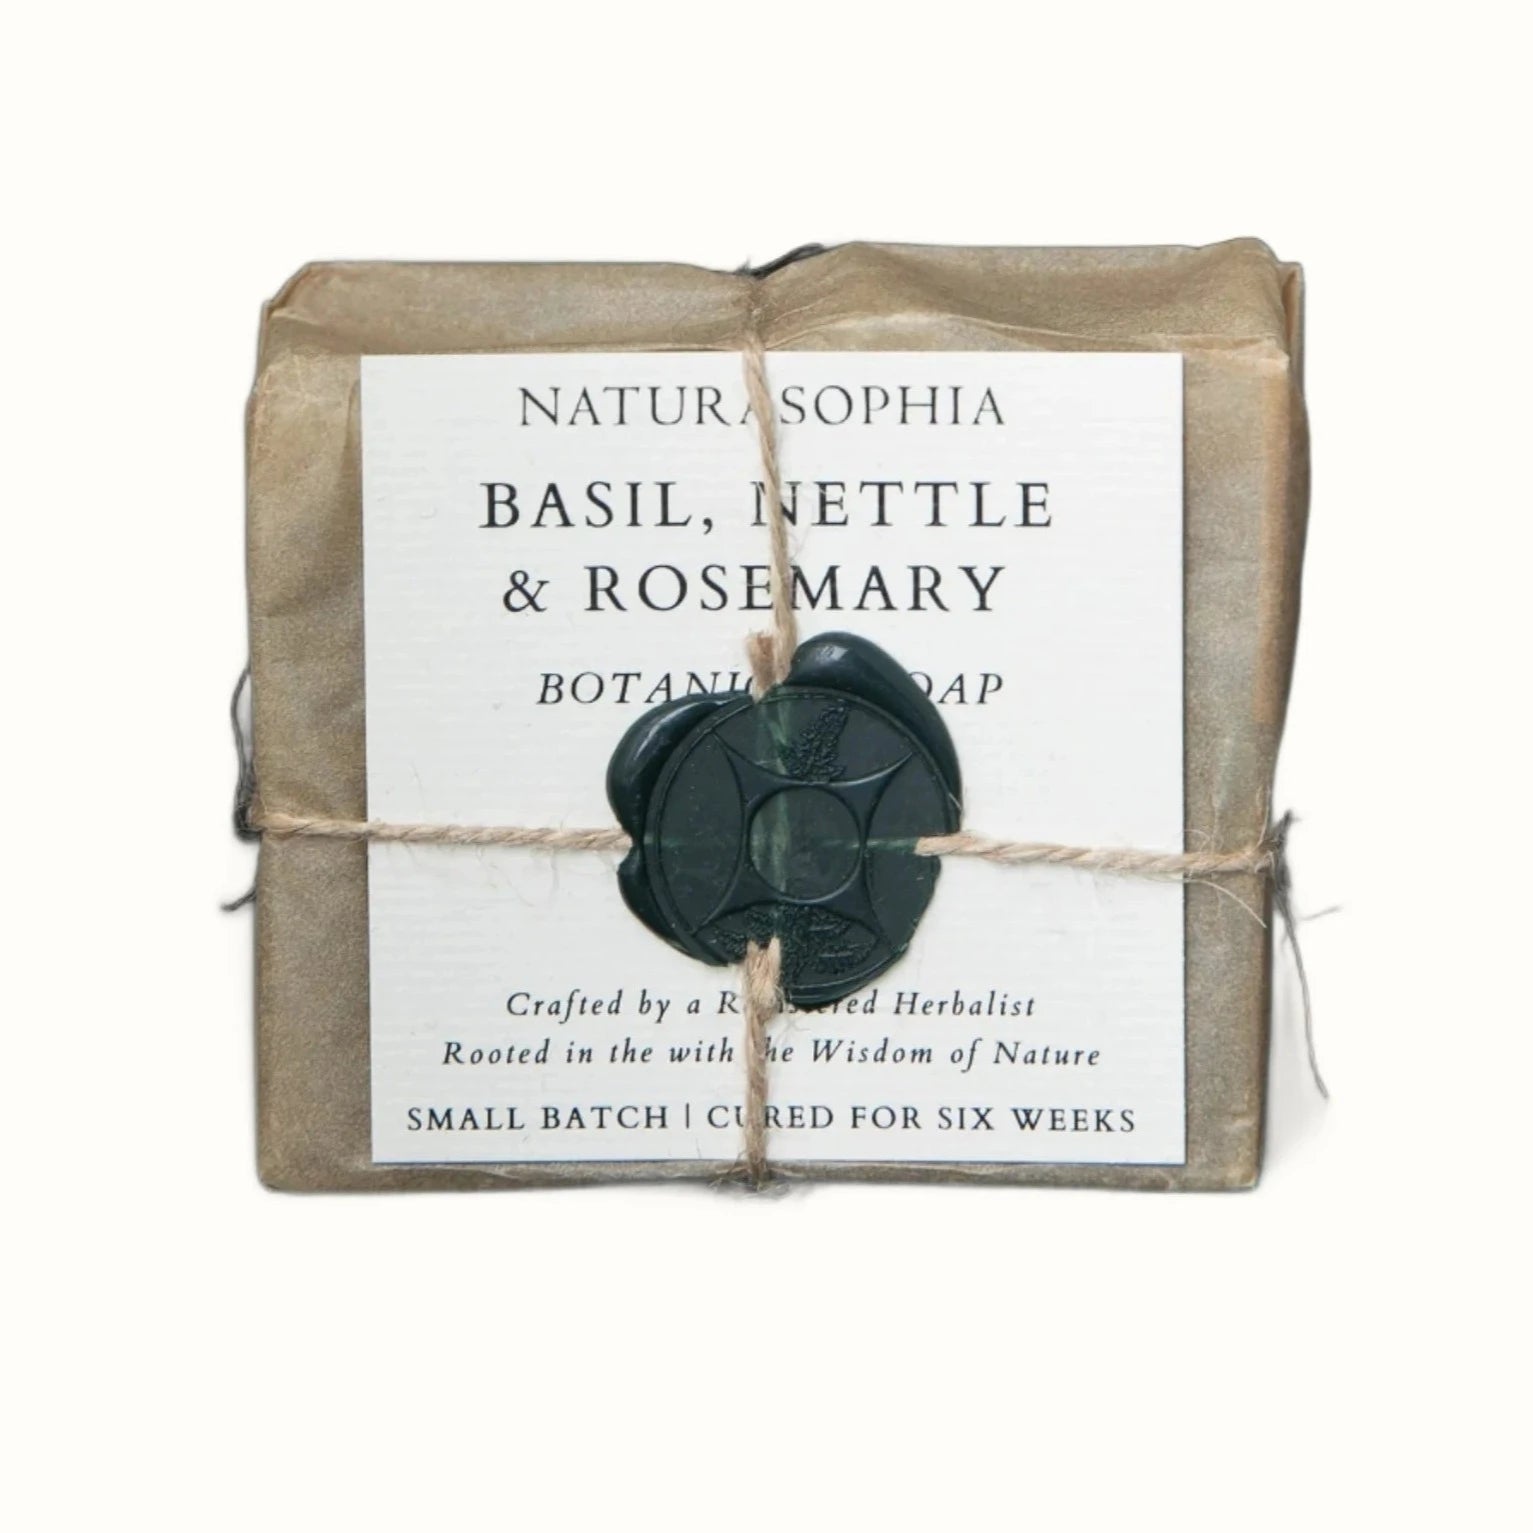 Basil rosemary nettle soap